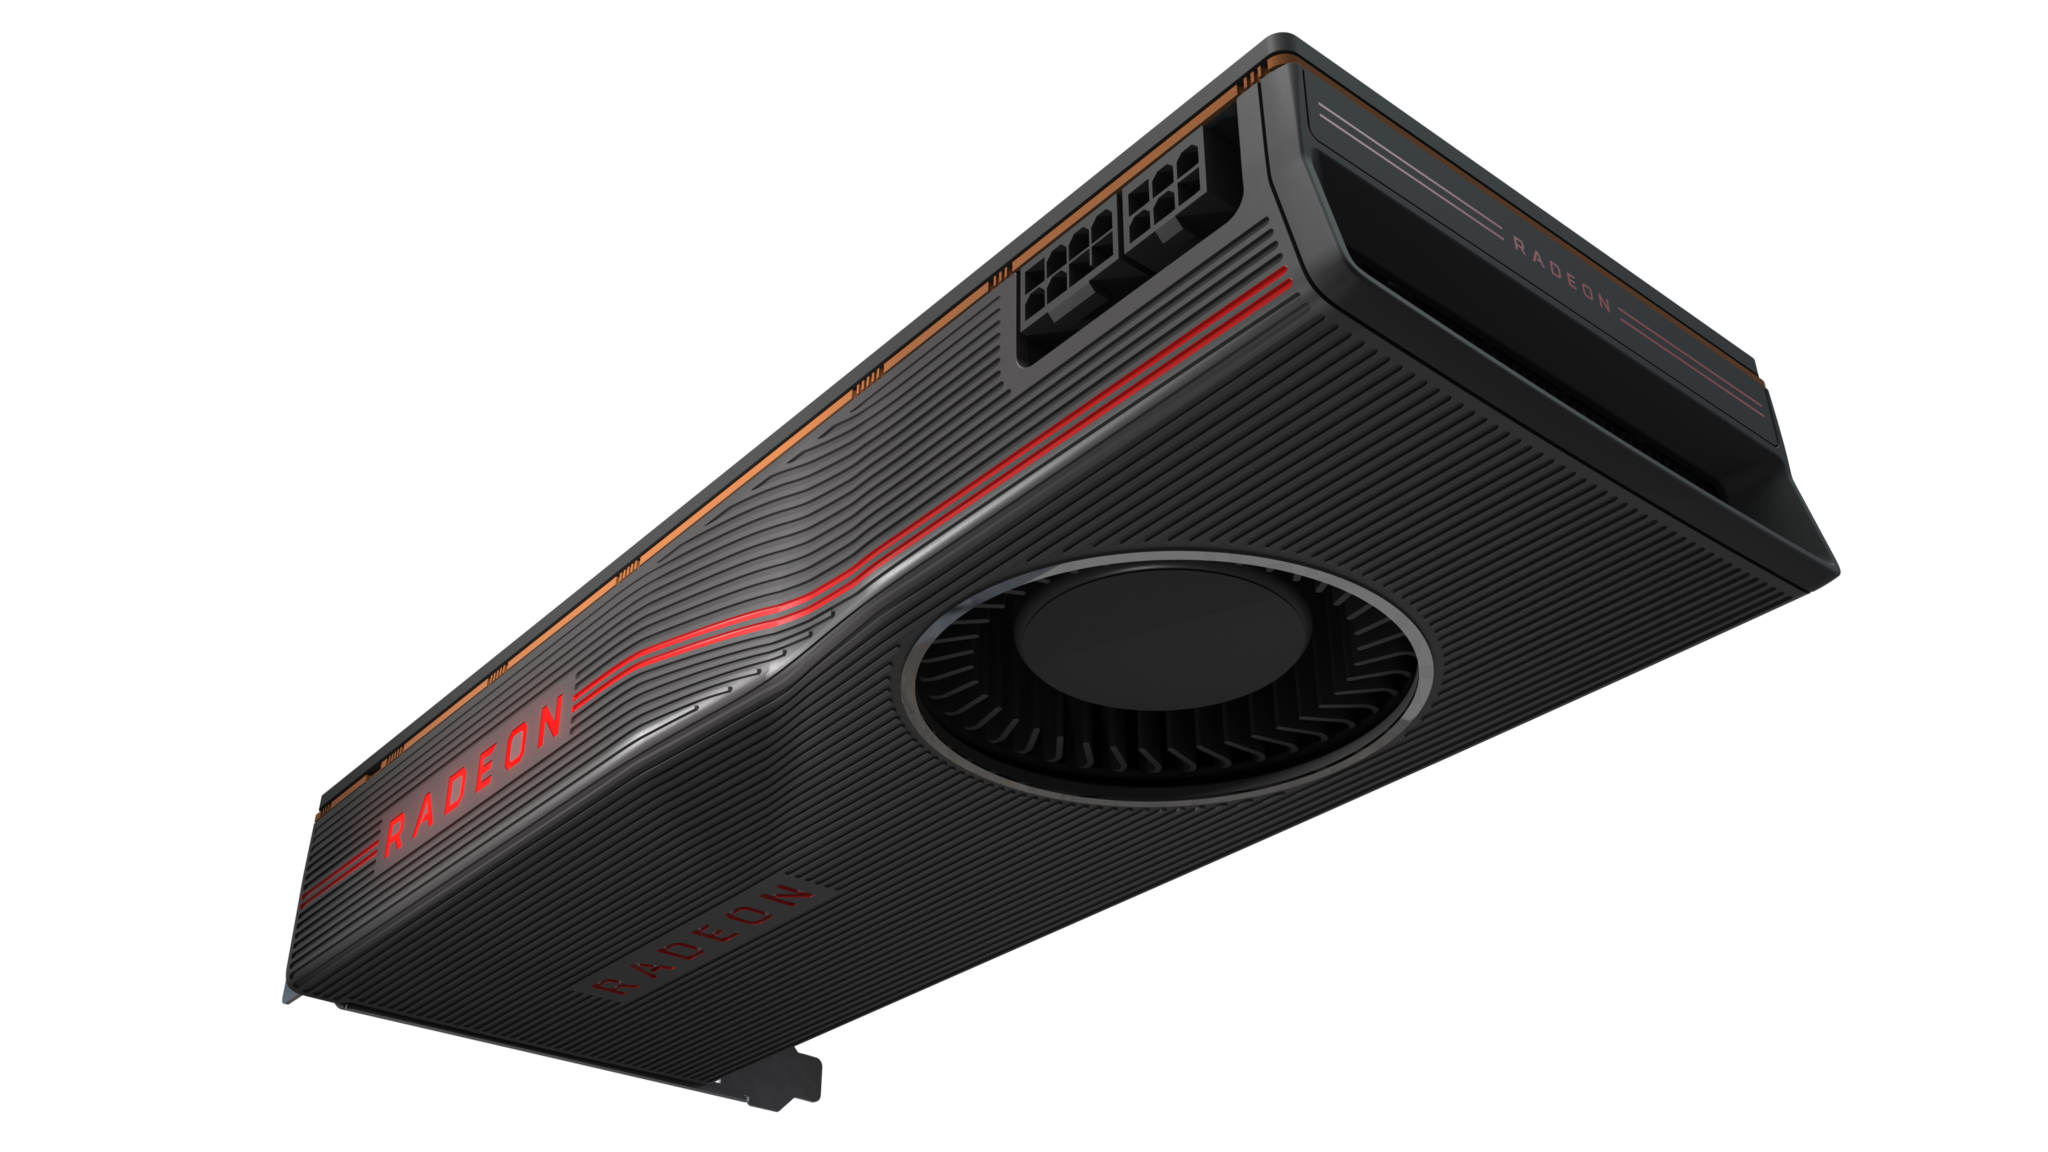 2 AMD เปิดตัวผลิตภัณฑ์แสดงความเป็นผู้นำแพลทฟอร์มพีซี สำหรับเกมเมอร์ทั่วโลก ณ งาน E3 2019